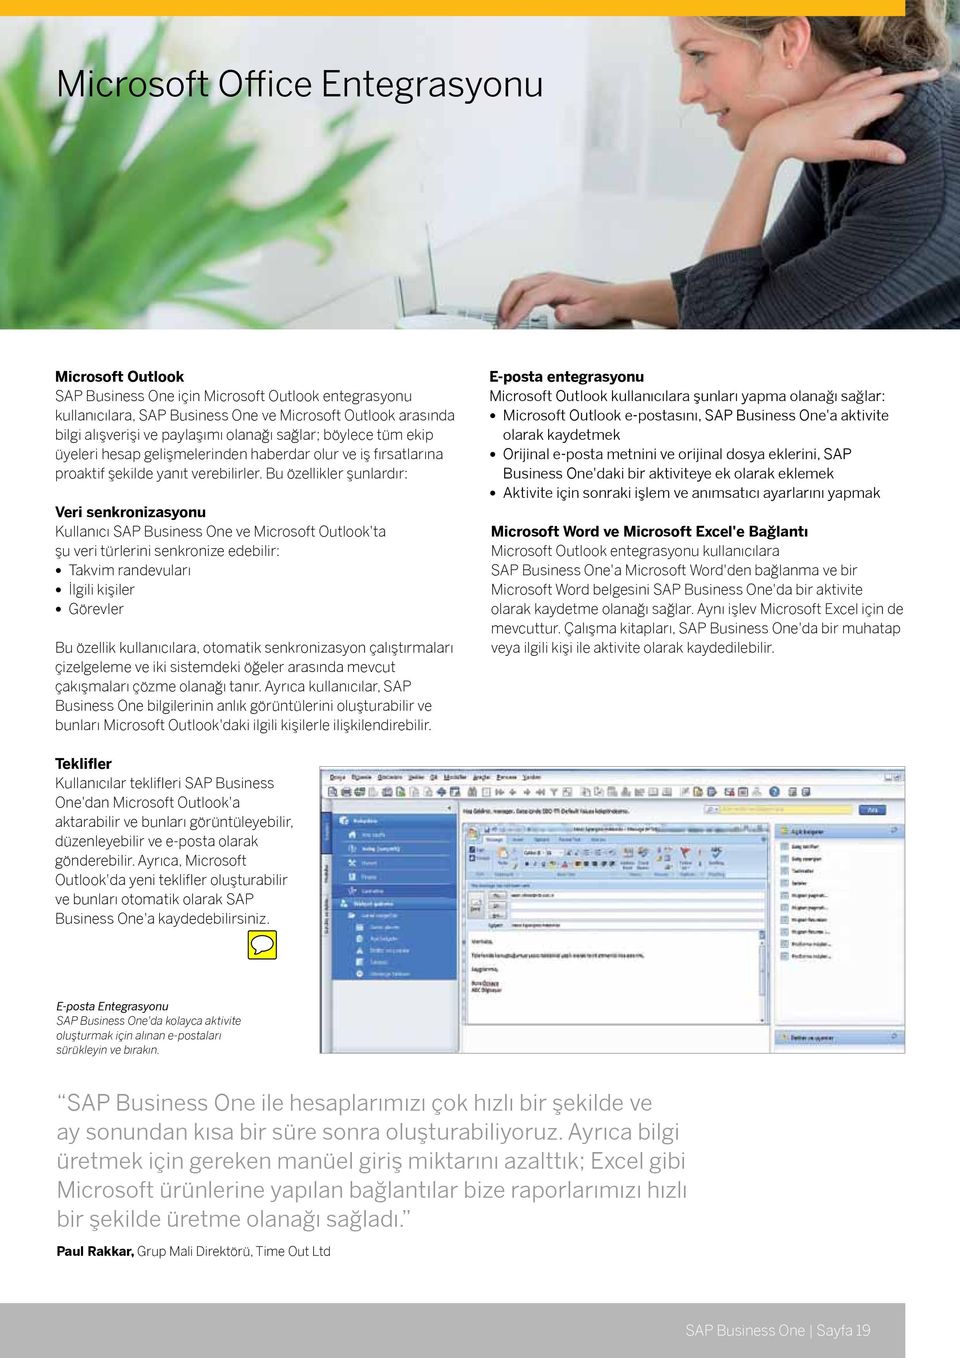 Bu özellikler şunlardır: Veri senkronizasyonu Kullanıcı SAP Business One ve Microsoft Outlook'ta şu veri türlerini senkronize edebilir: Takvim randevuları İlgili kişiler Görevler Bu özellik